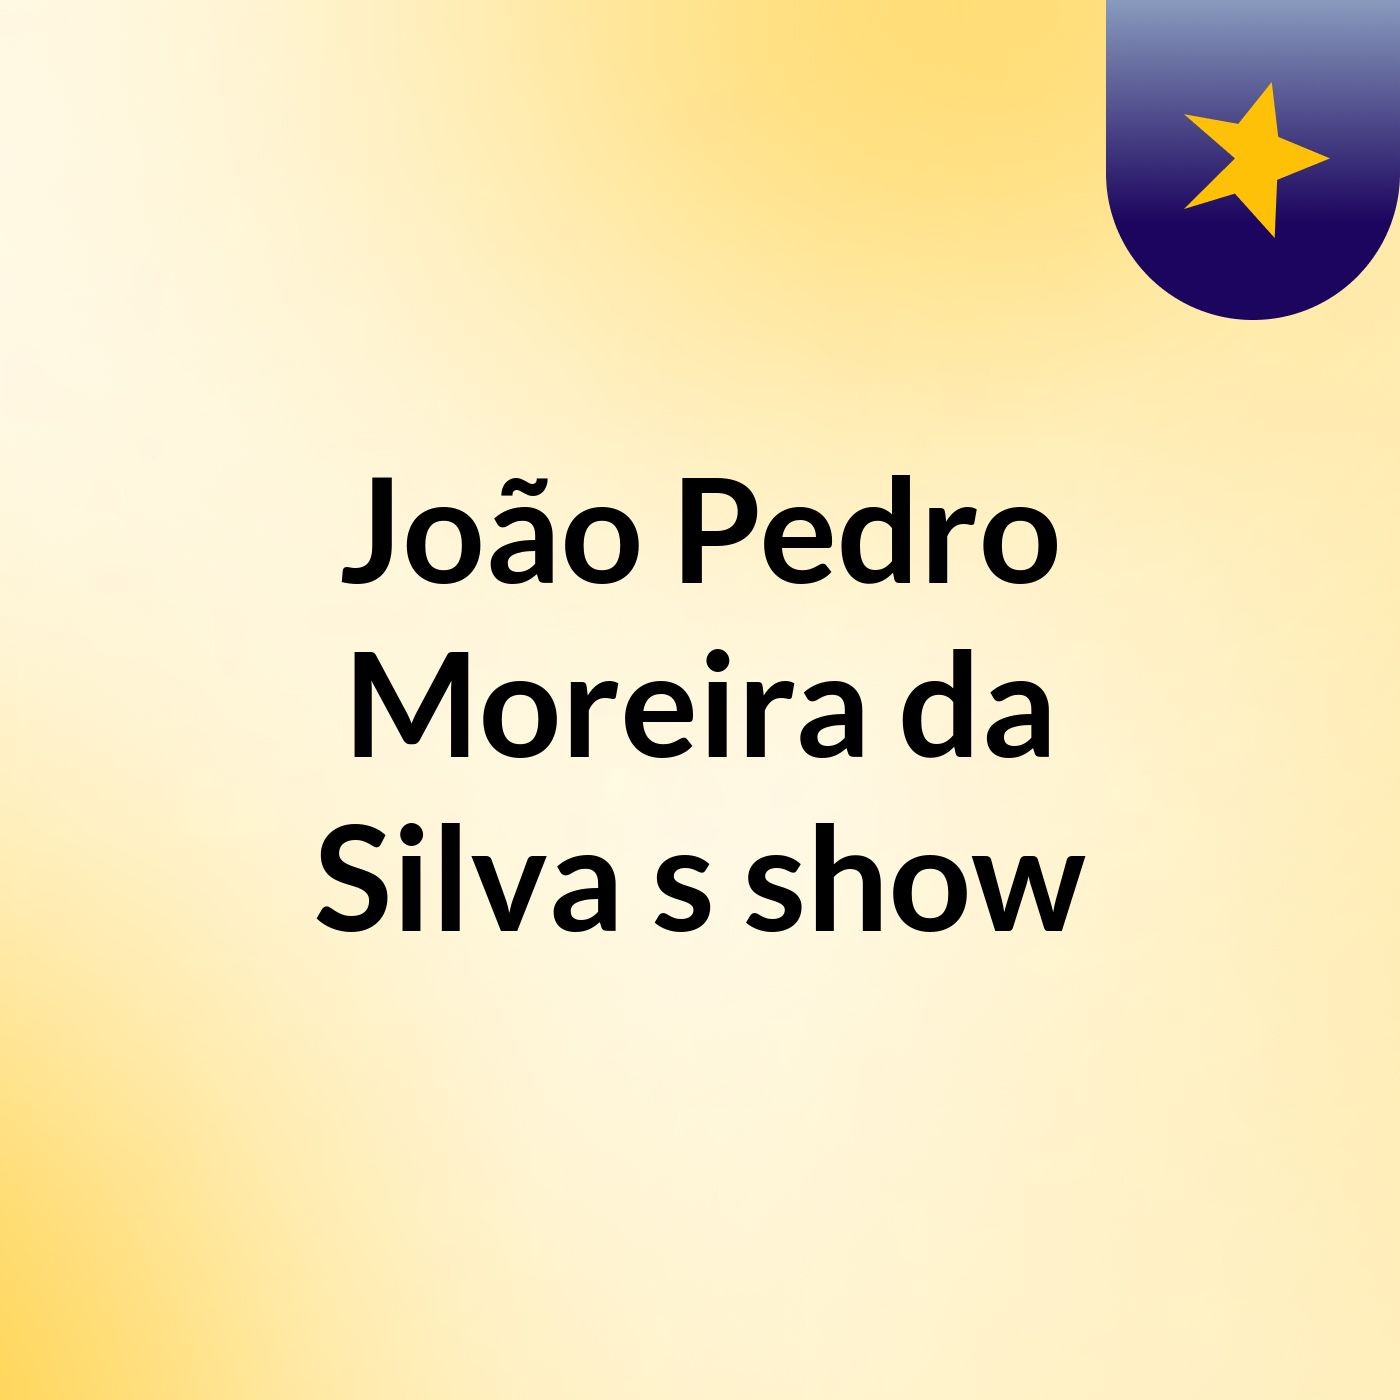 João Pedro Moreira da Silva's show